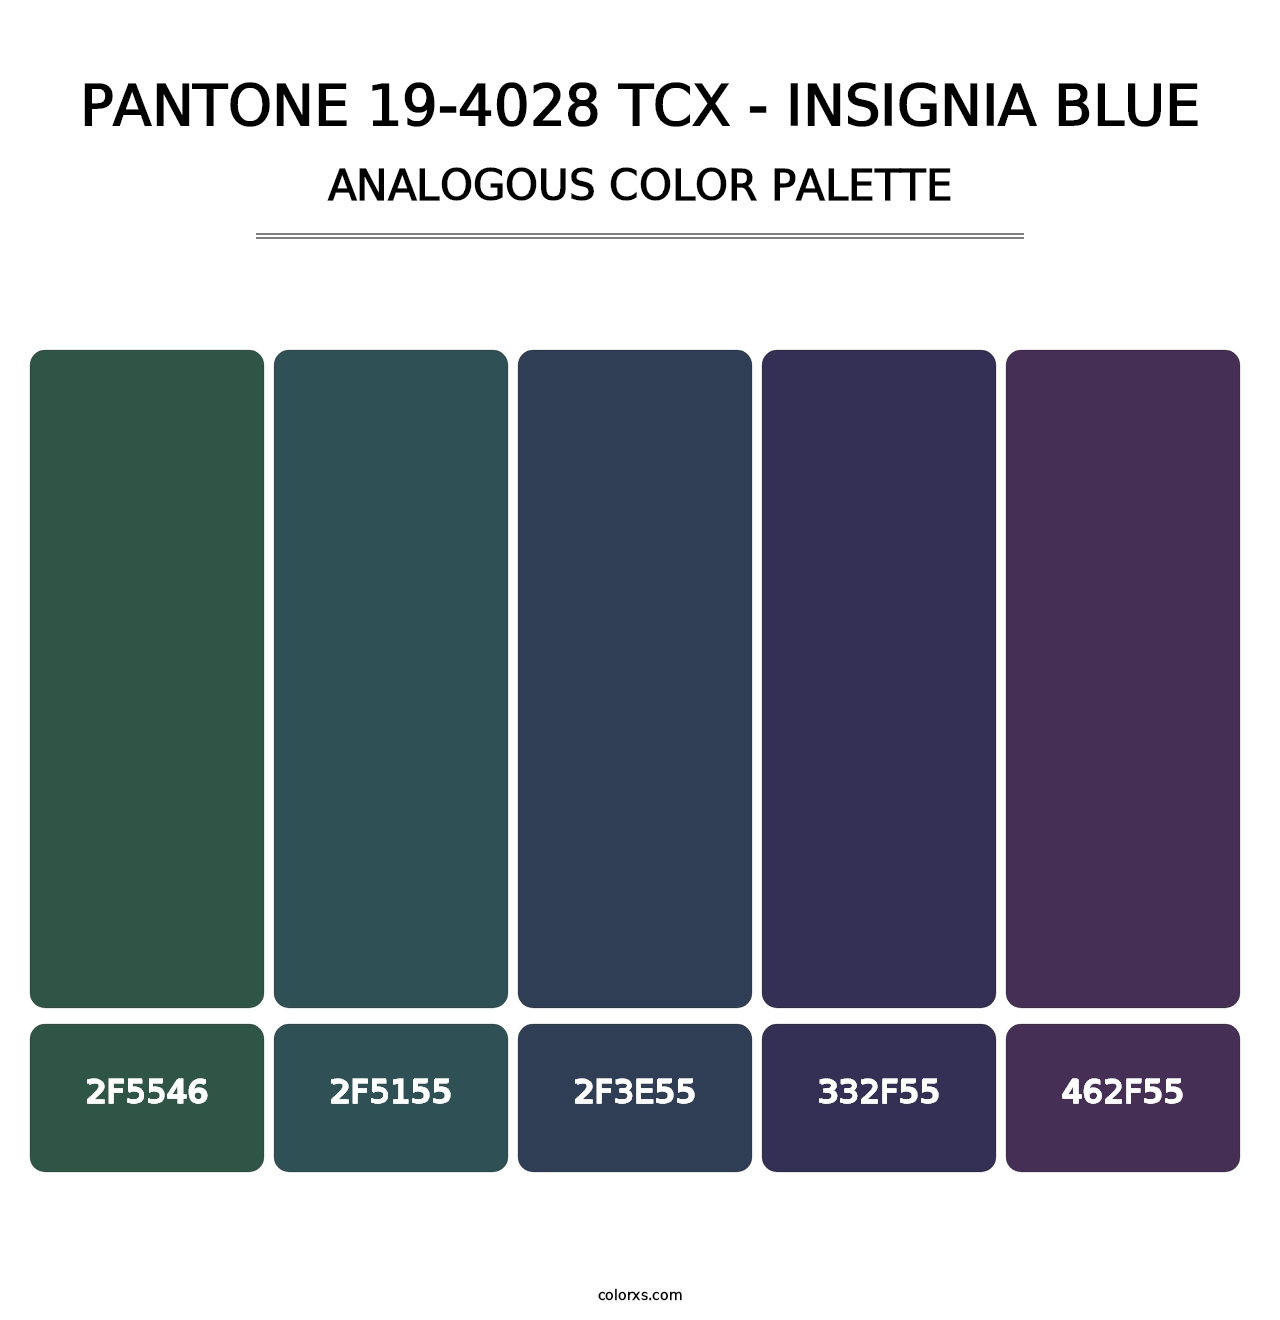 PANTONE 19-4028 TCX - Insignia Blue - Analogous Color Palette